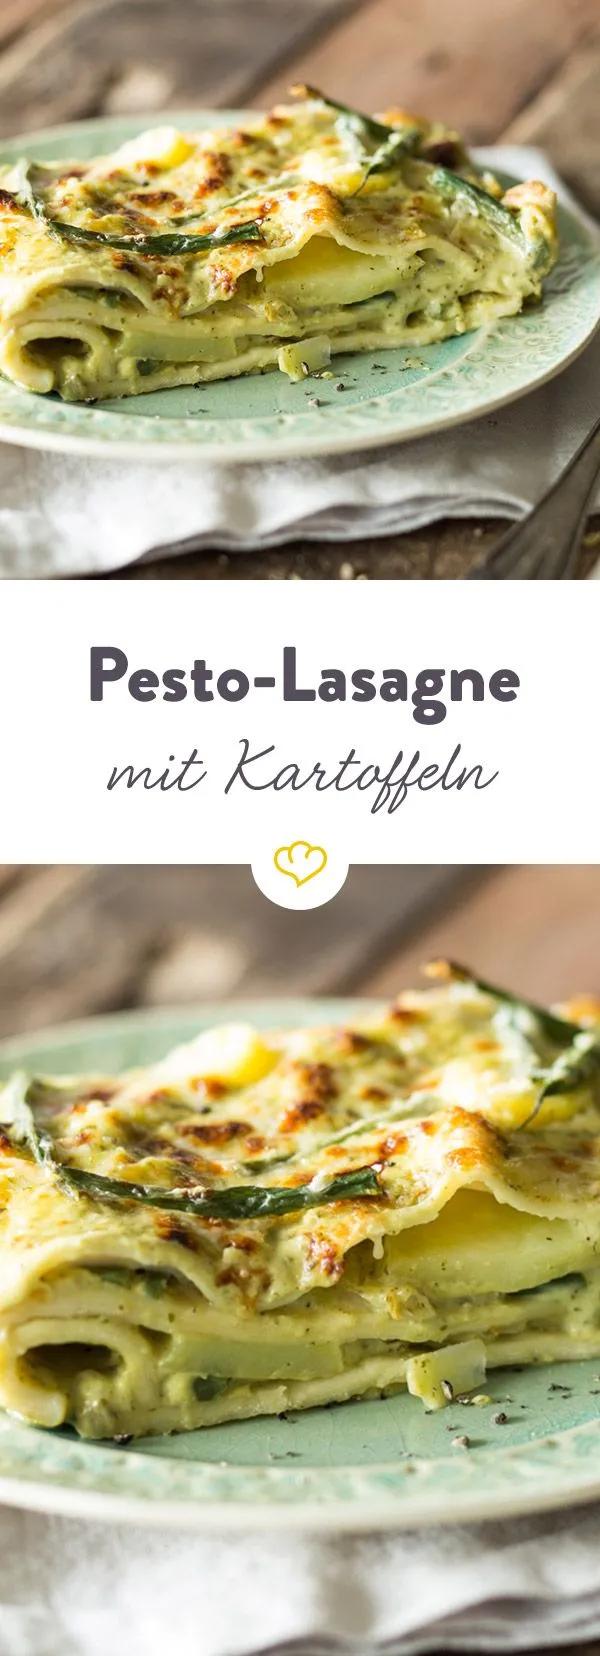 Pesto-Lasagne mit Kartoffeln und Bohnen | Rezept | Rezepte, Essen ...